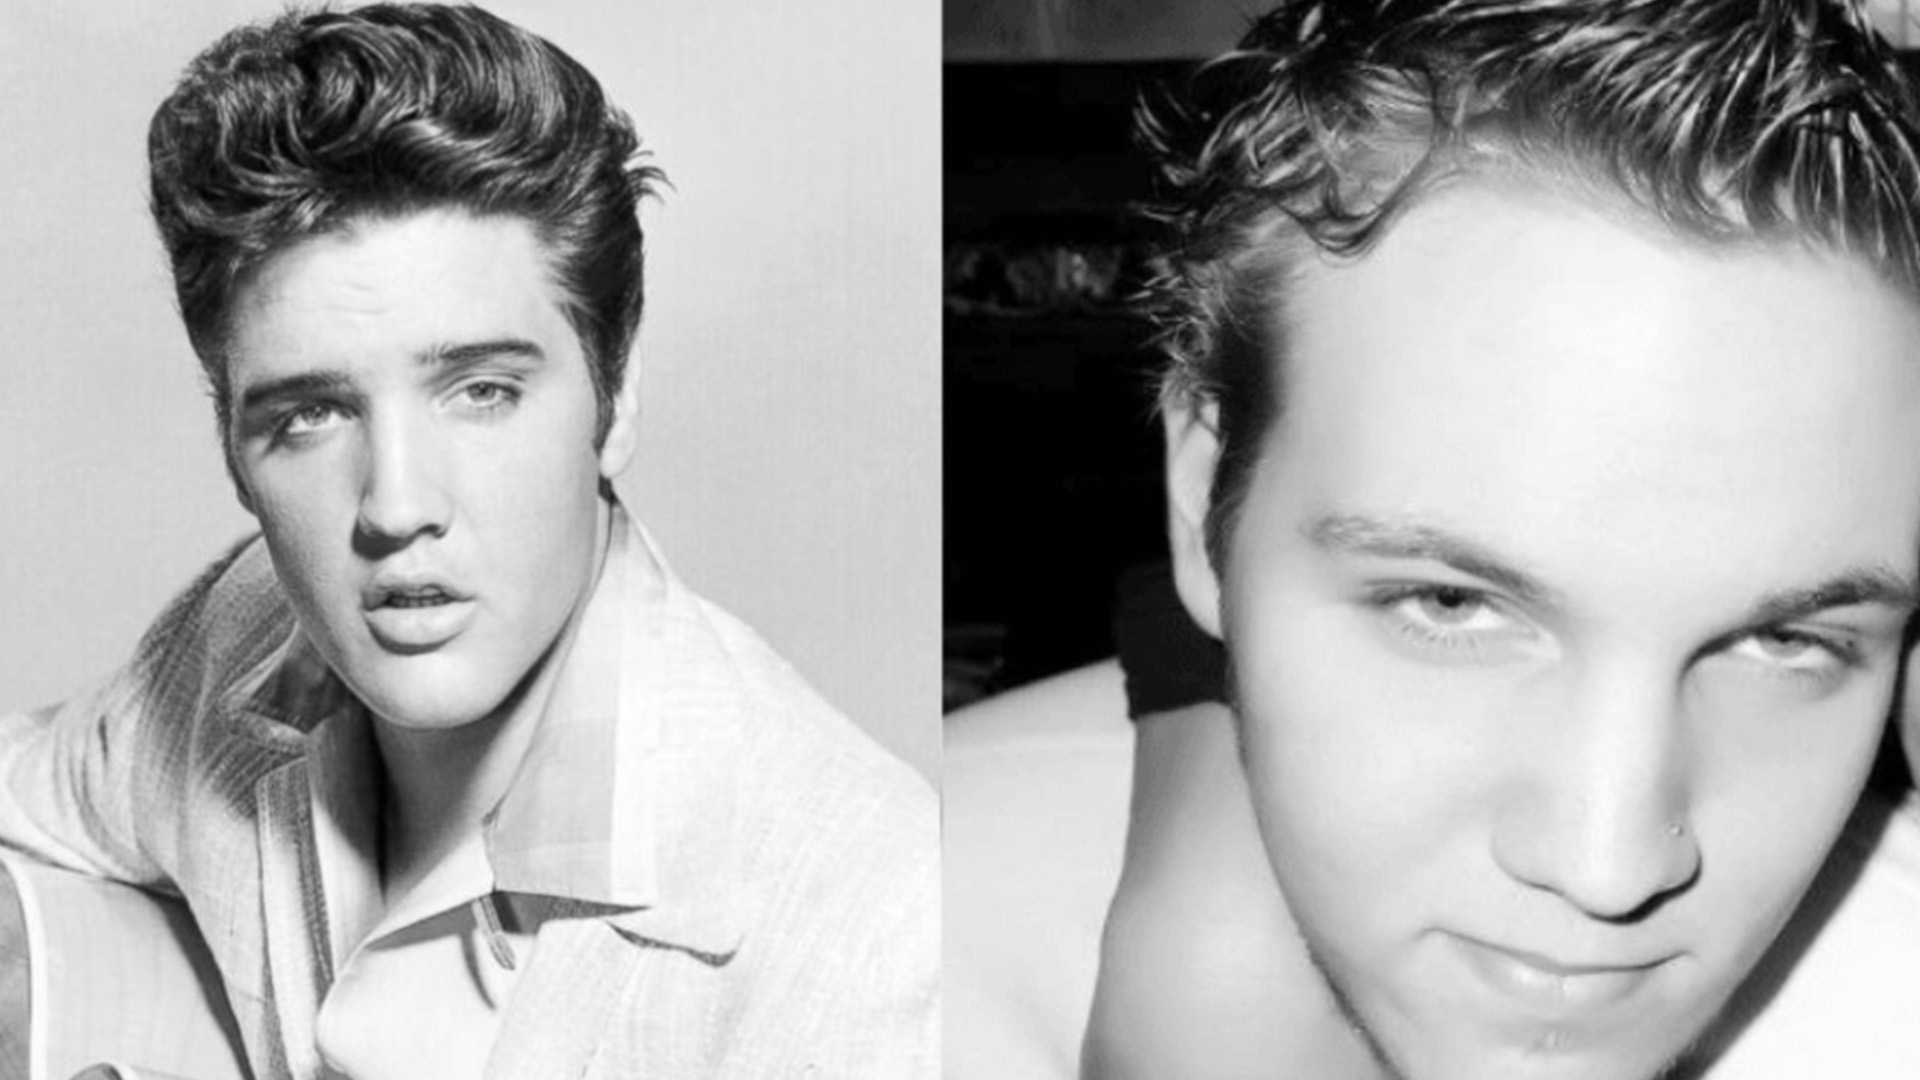 Elvis Presley’s grandson Benjamin Keough passes away at 27